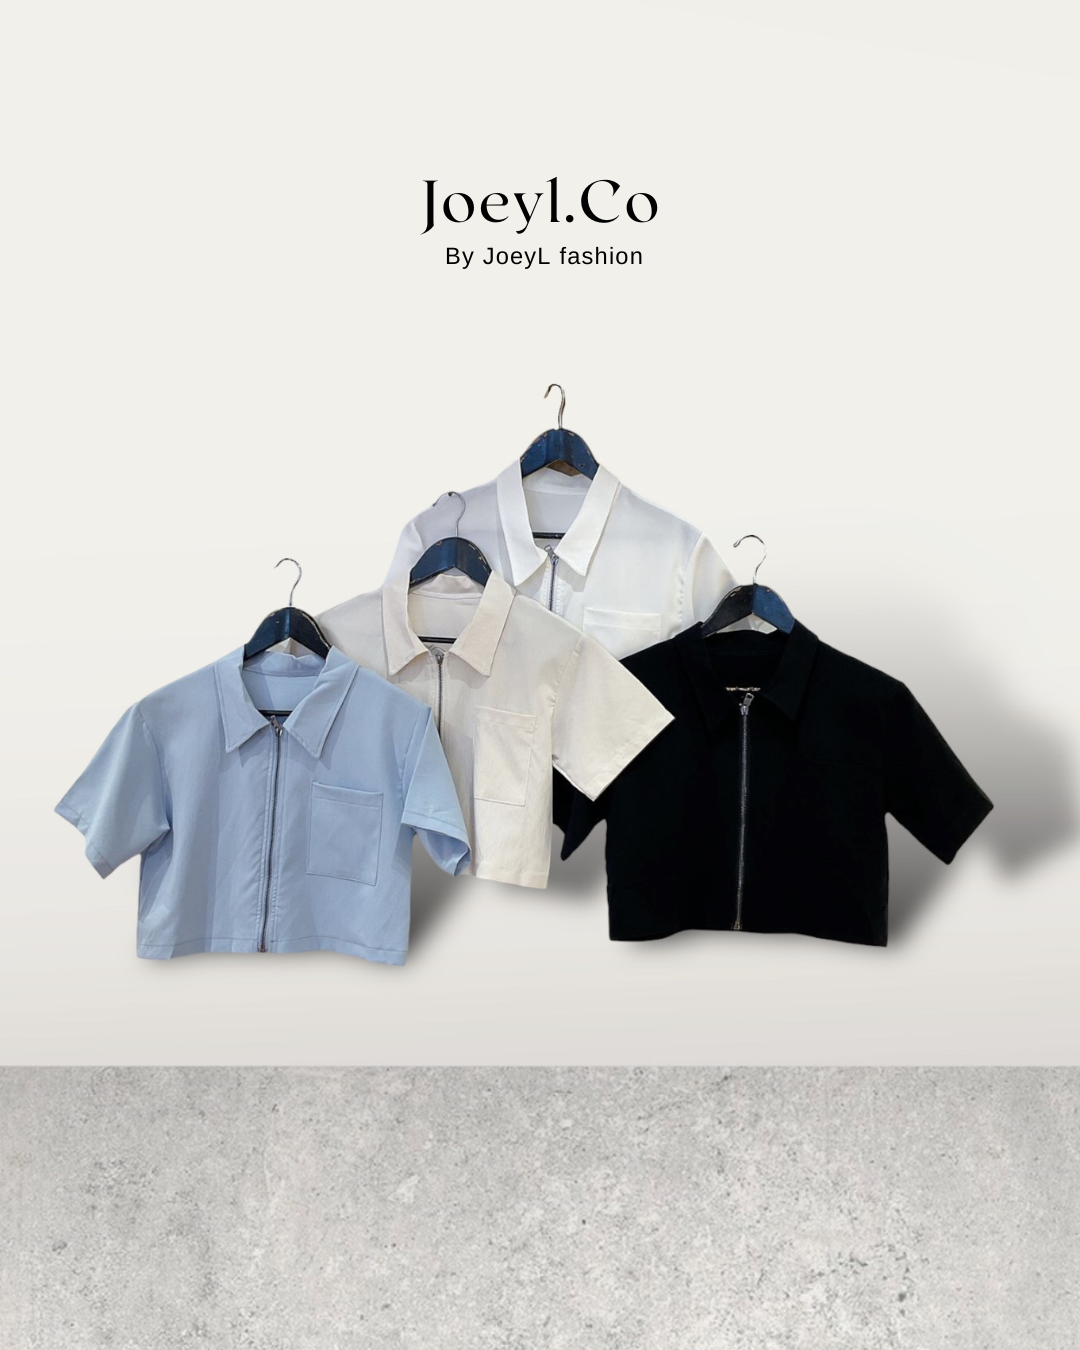 Joeyl.co- Ladies short sleeve Top or Jacket